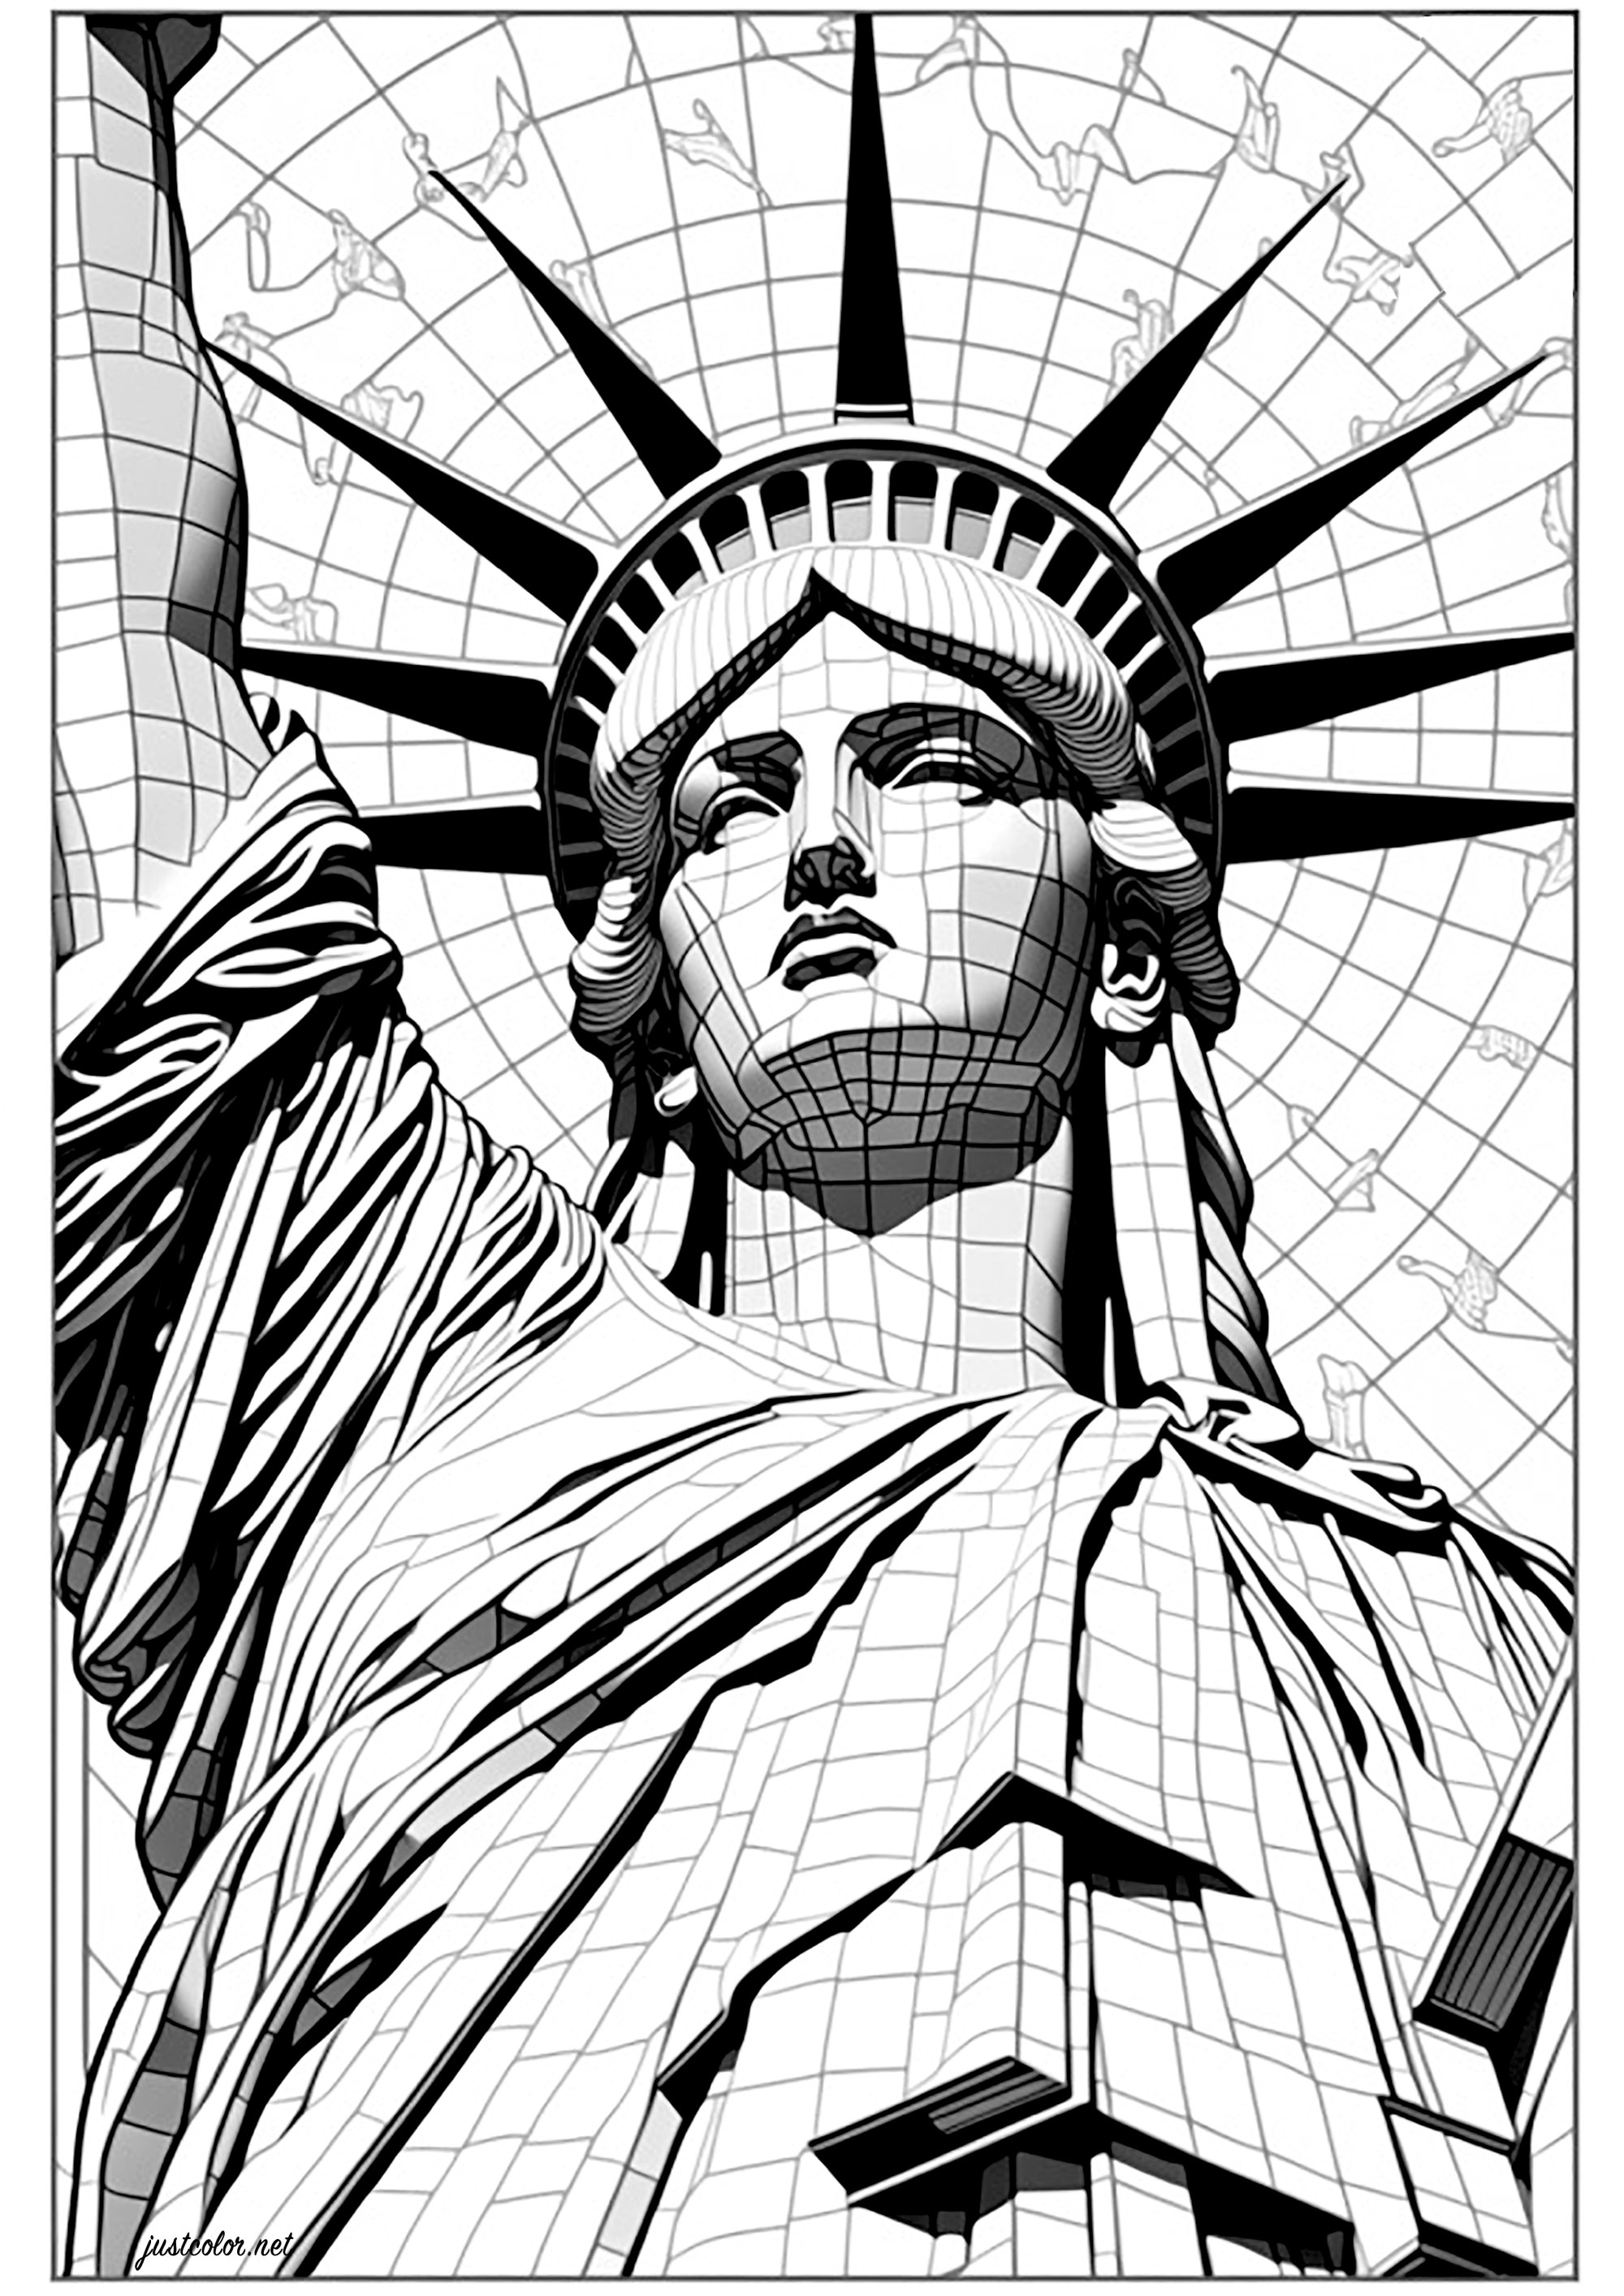 Estatua de la Libertad en 3D. Esta página para colorear es un reto único y emocionante para los amantes de colorear. Representa la Estatua de la Libertad en estilo 3D. Los detalles de la estatua se complementan con facetas geométricas de líneas finas, que tendrás que colorear individualmente.